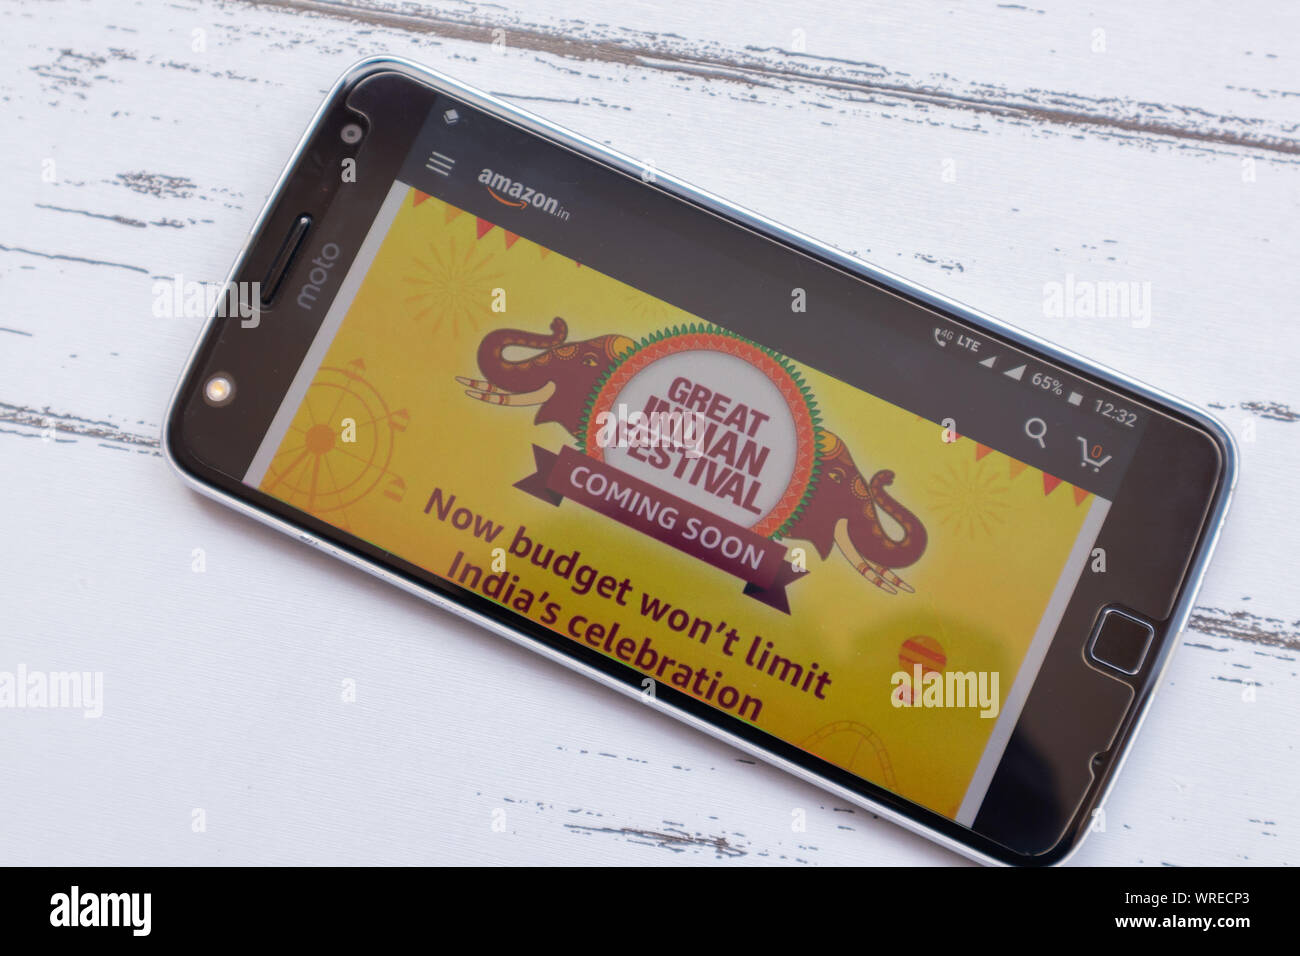 Maski, Inde - 10 septembre 2019 : Amazon grand festival indien vente  bientôt sur Amazon android application de téléphone mobile Photo Stock -  Alamy